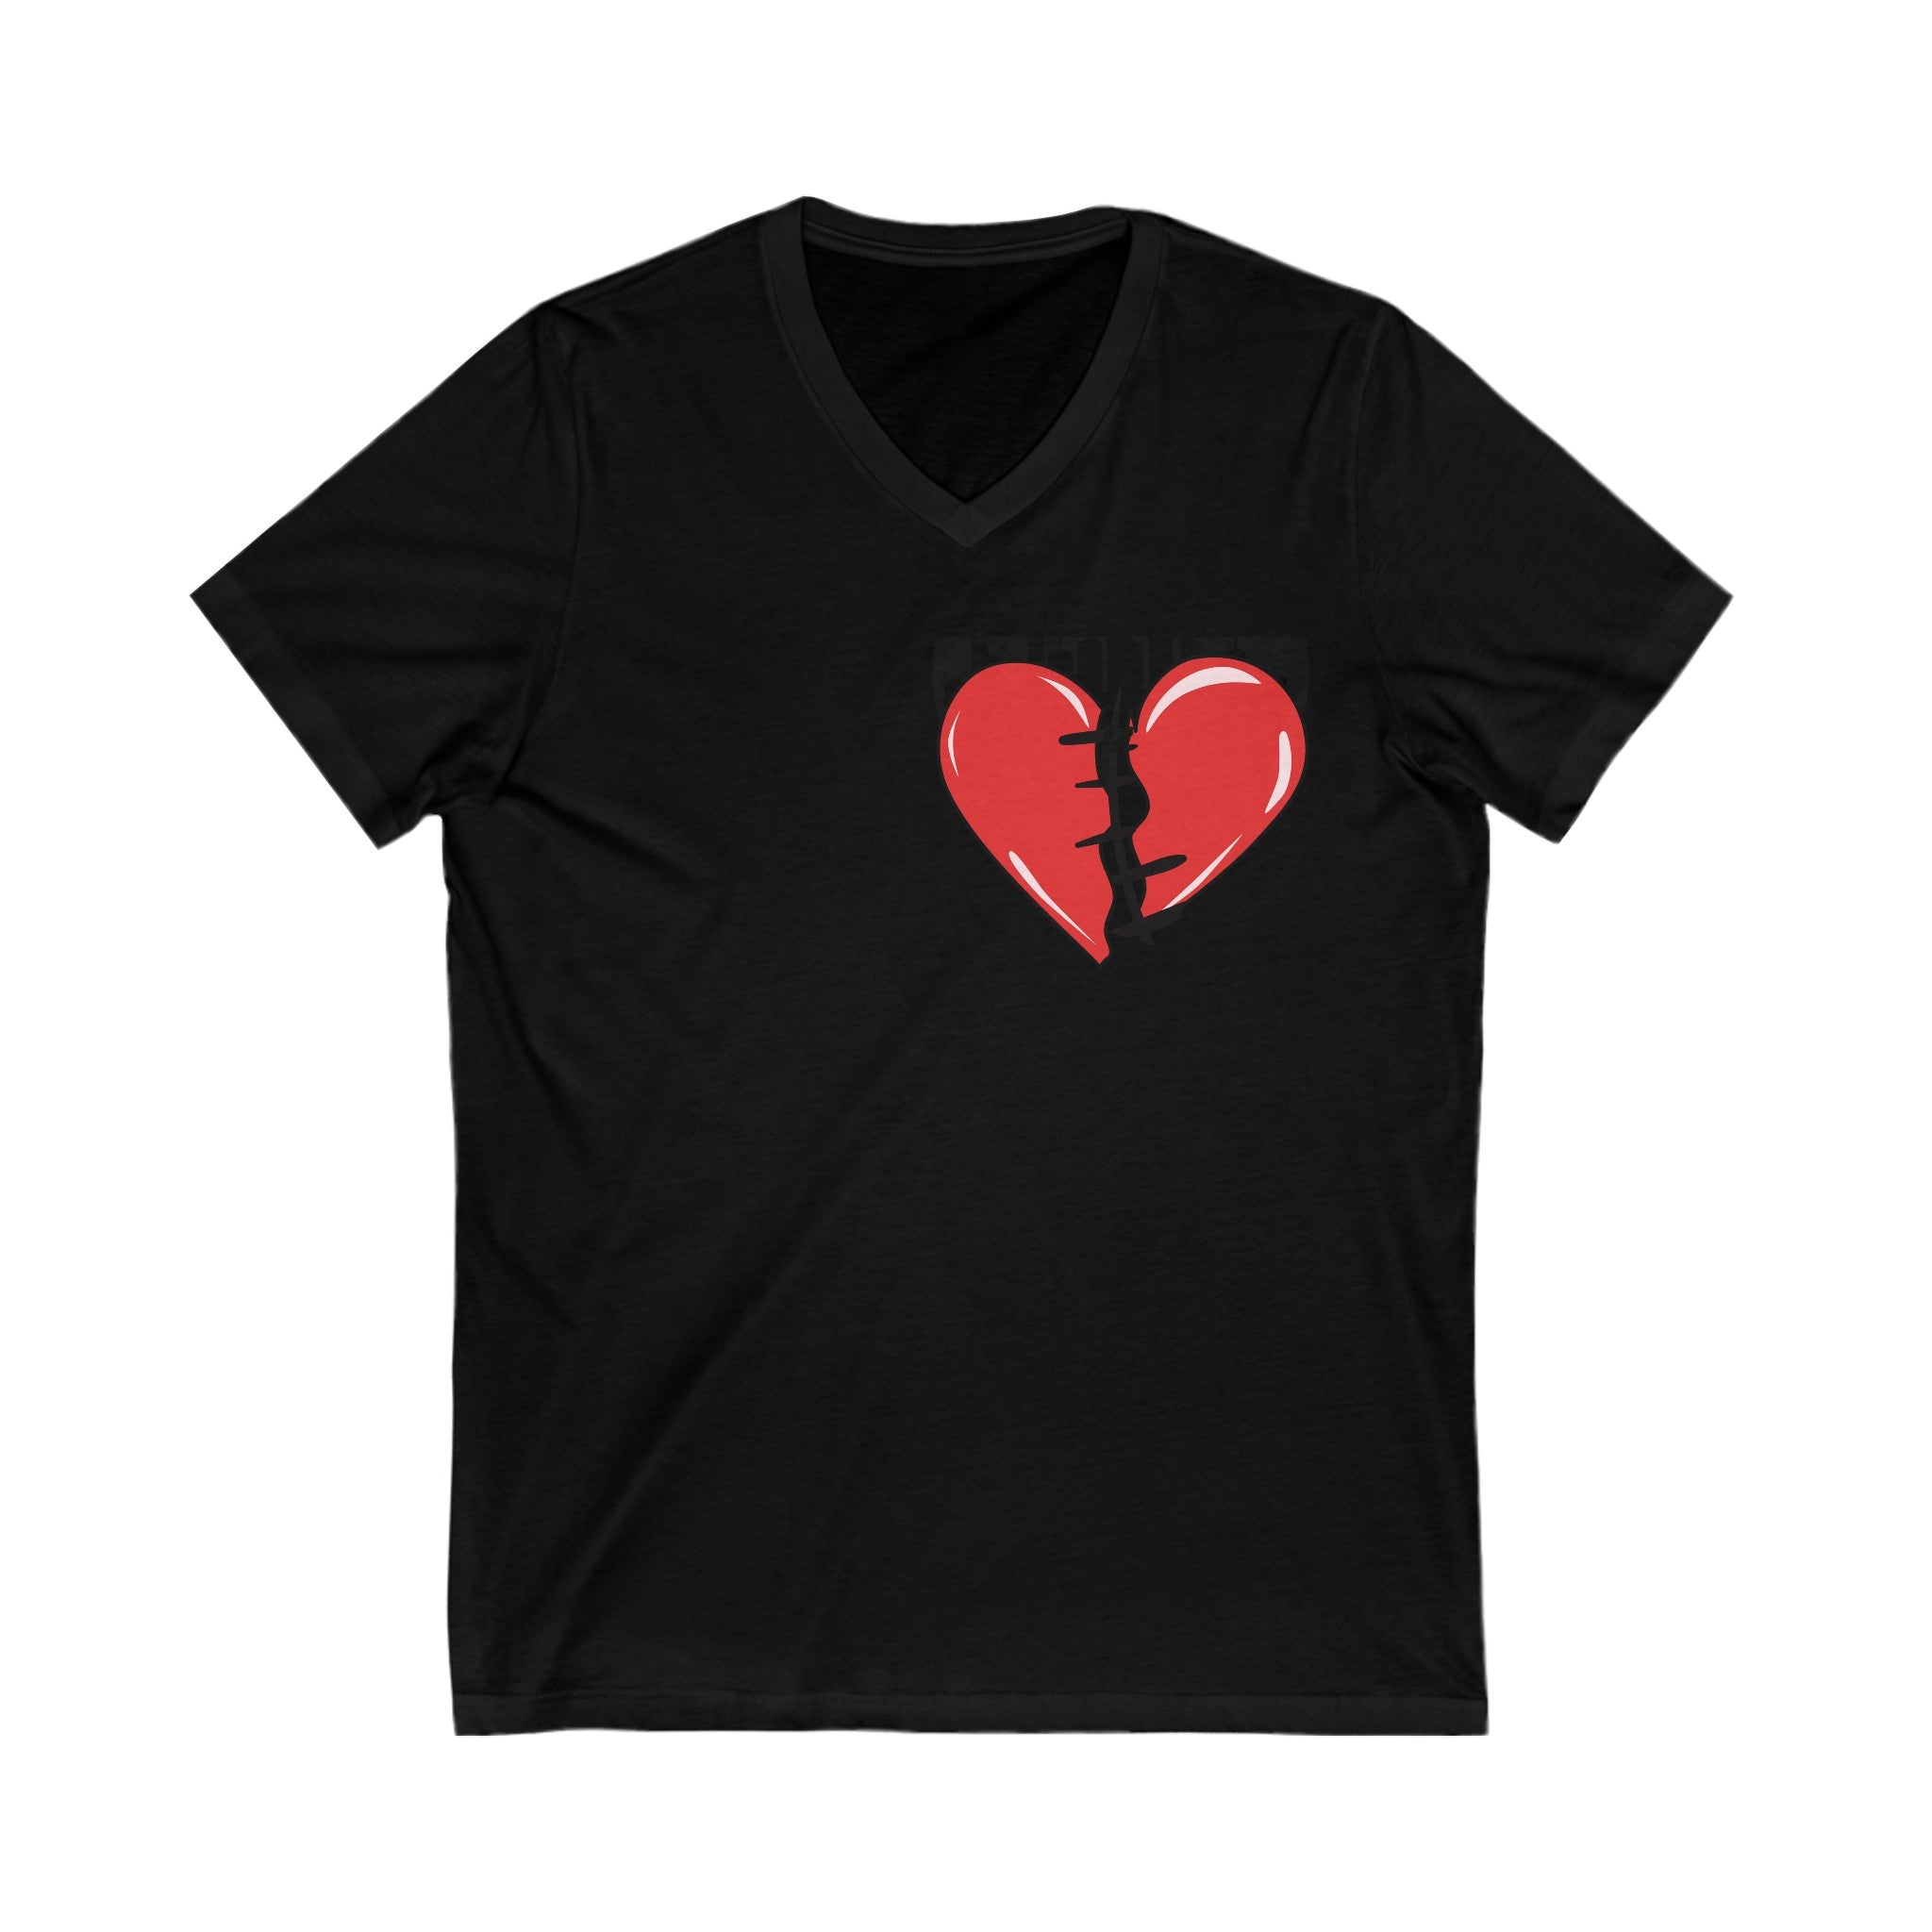 FURDreams “Valentines” XI V-Neck Tee Shirt